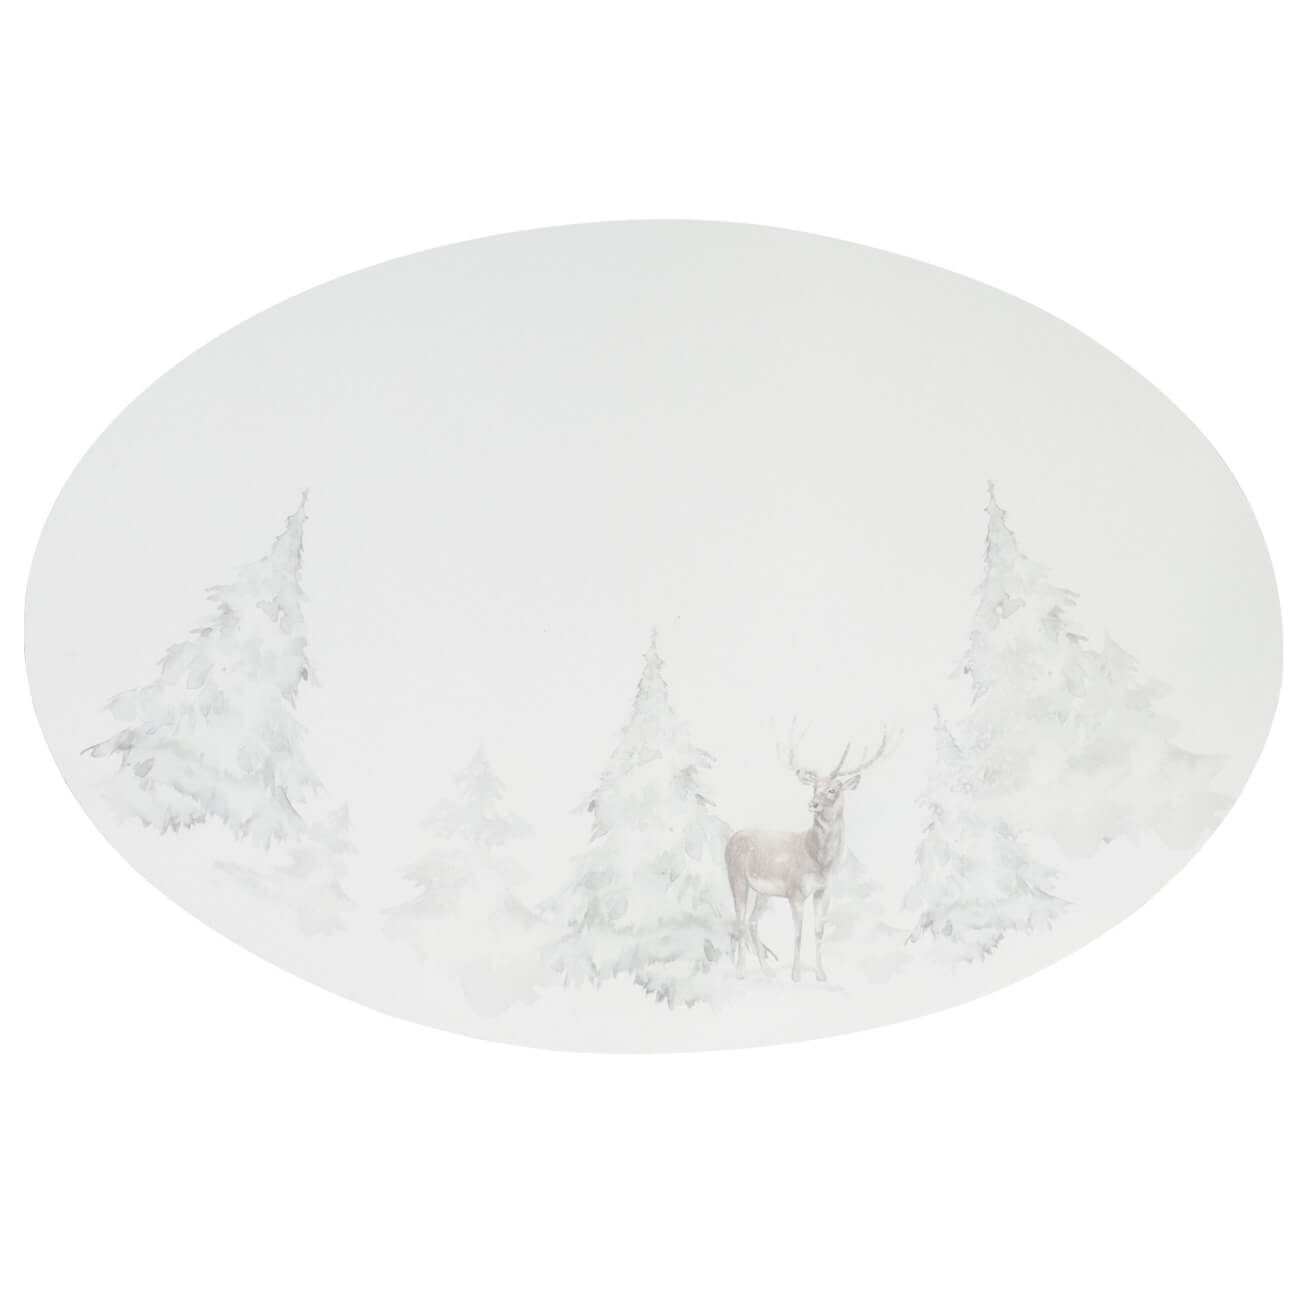 Салфетка под приборы, 30х45 см, ПВХ, овальная, белая, Олень в снежном лесу, Rock print салфетка под приборы 30х45 см полиэстер овальная шампань rotary shine